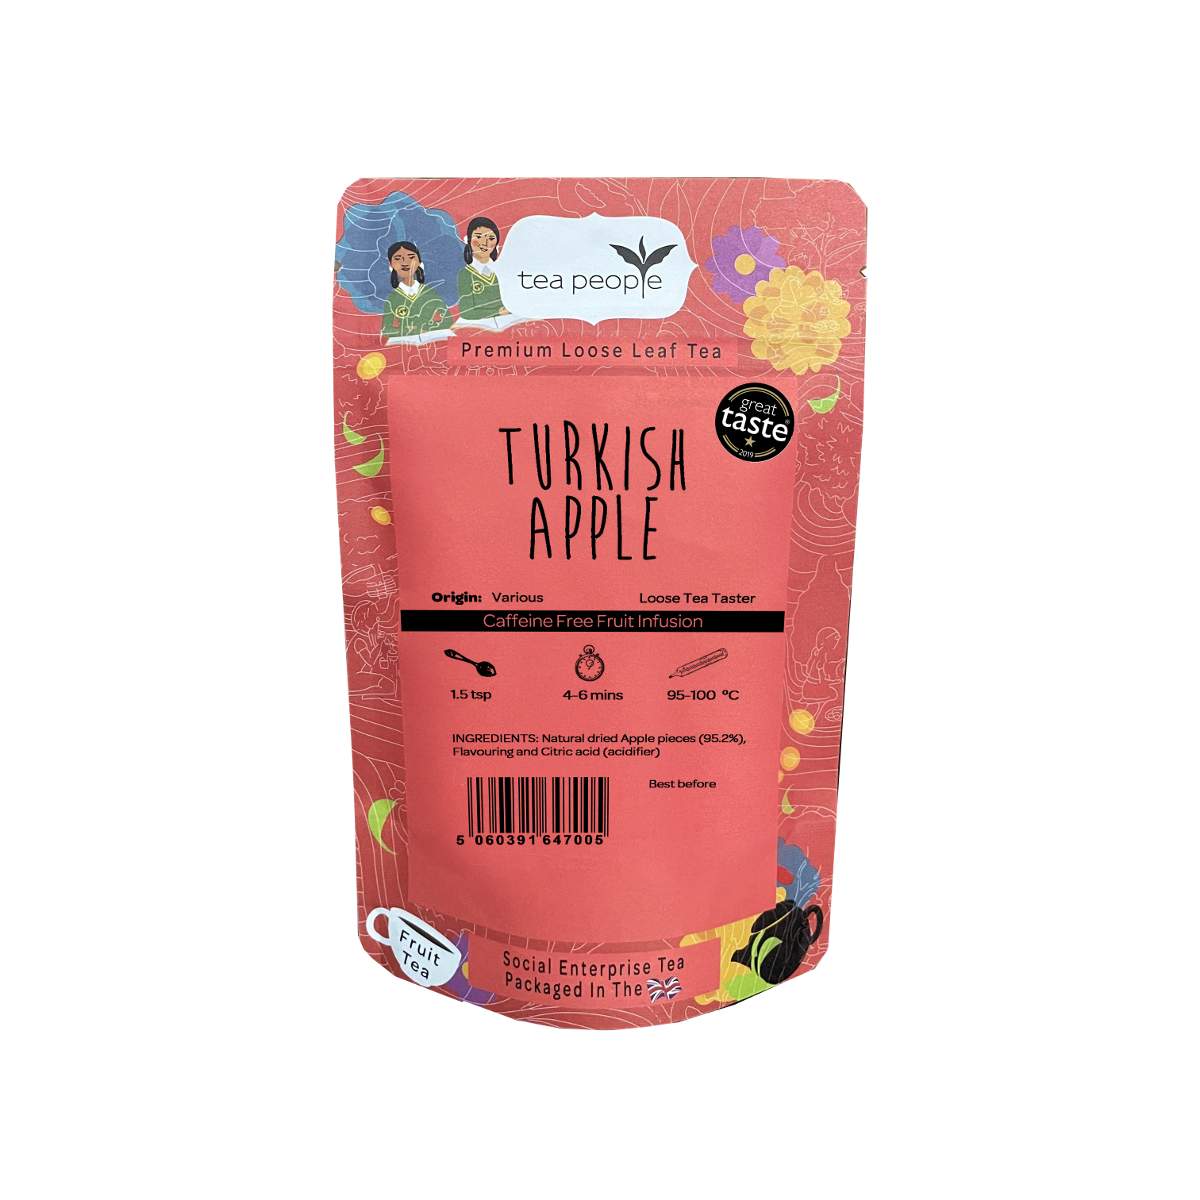 Turkish Apple - Loose Fruit Tea - Loose tea Taster Pack